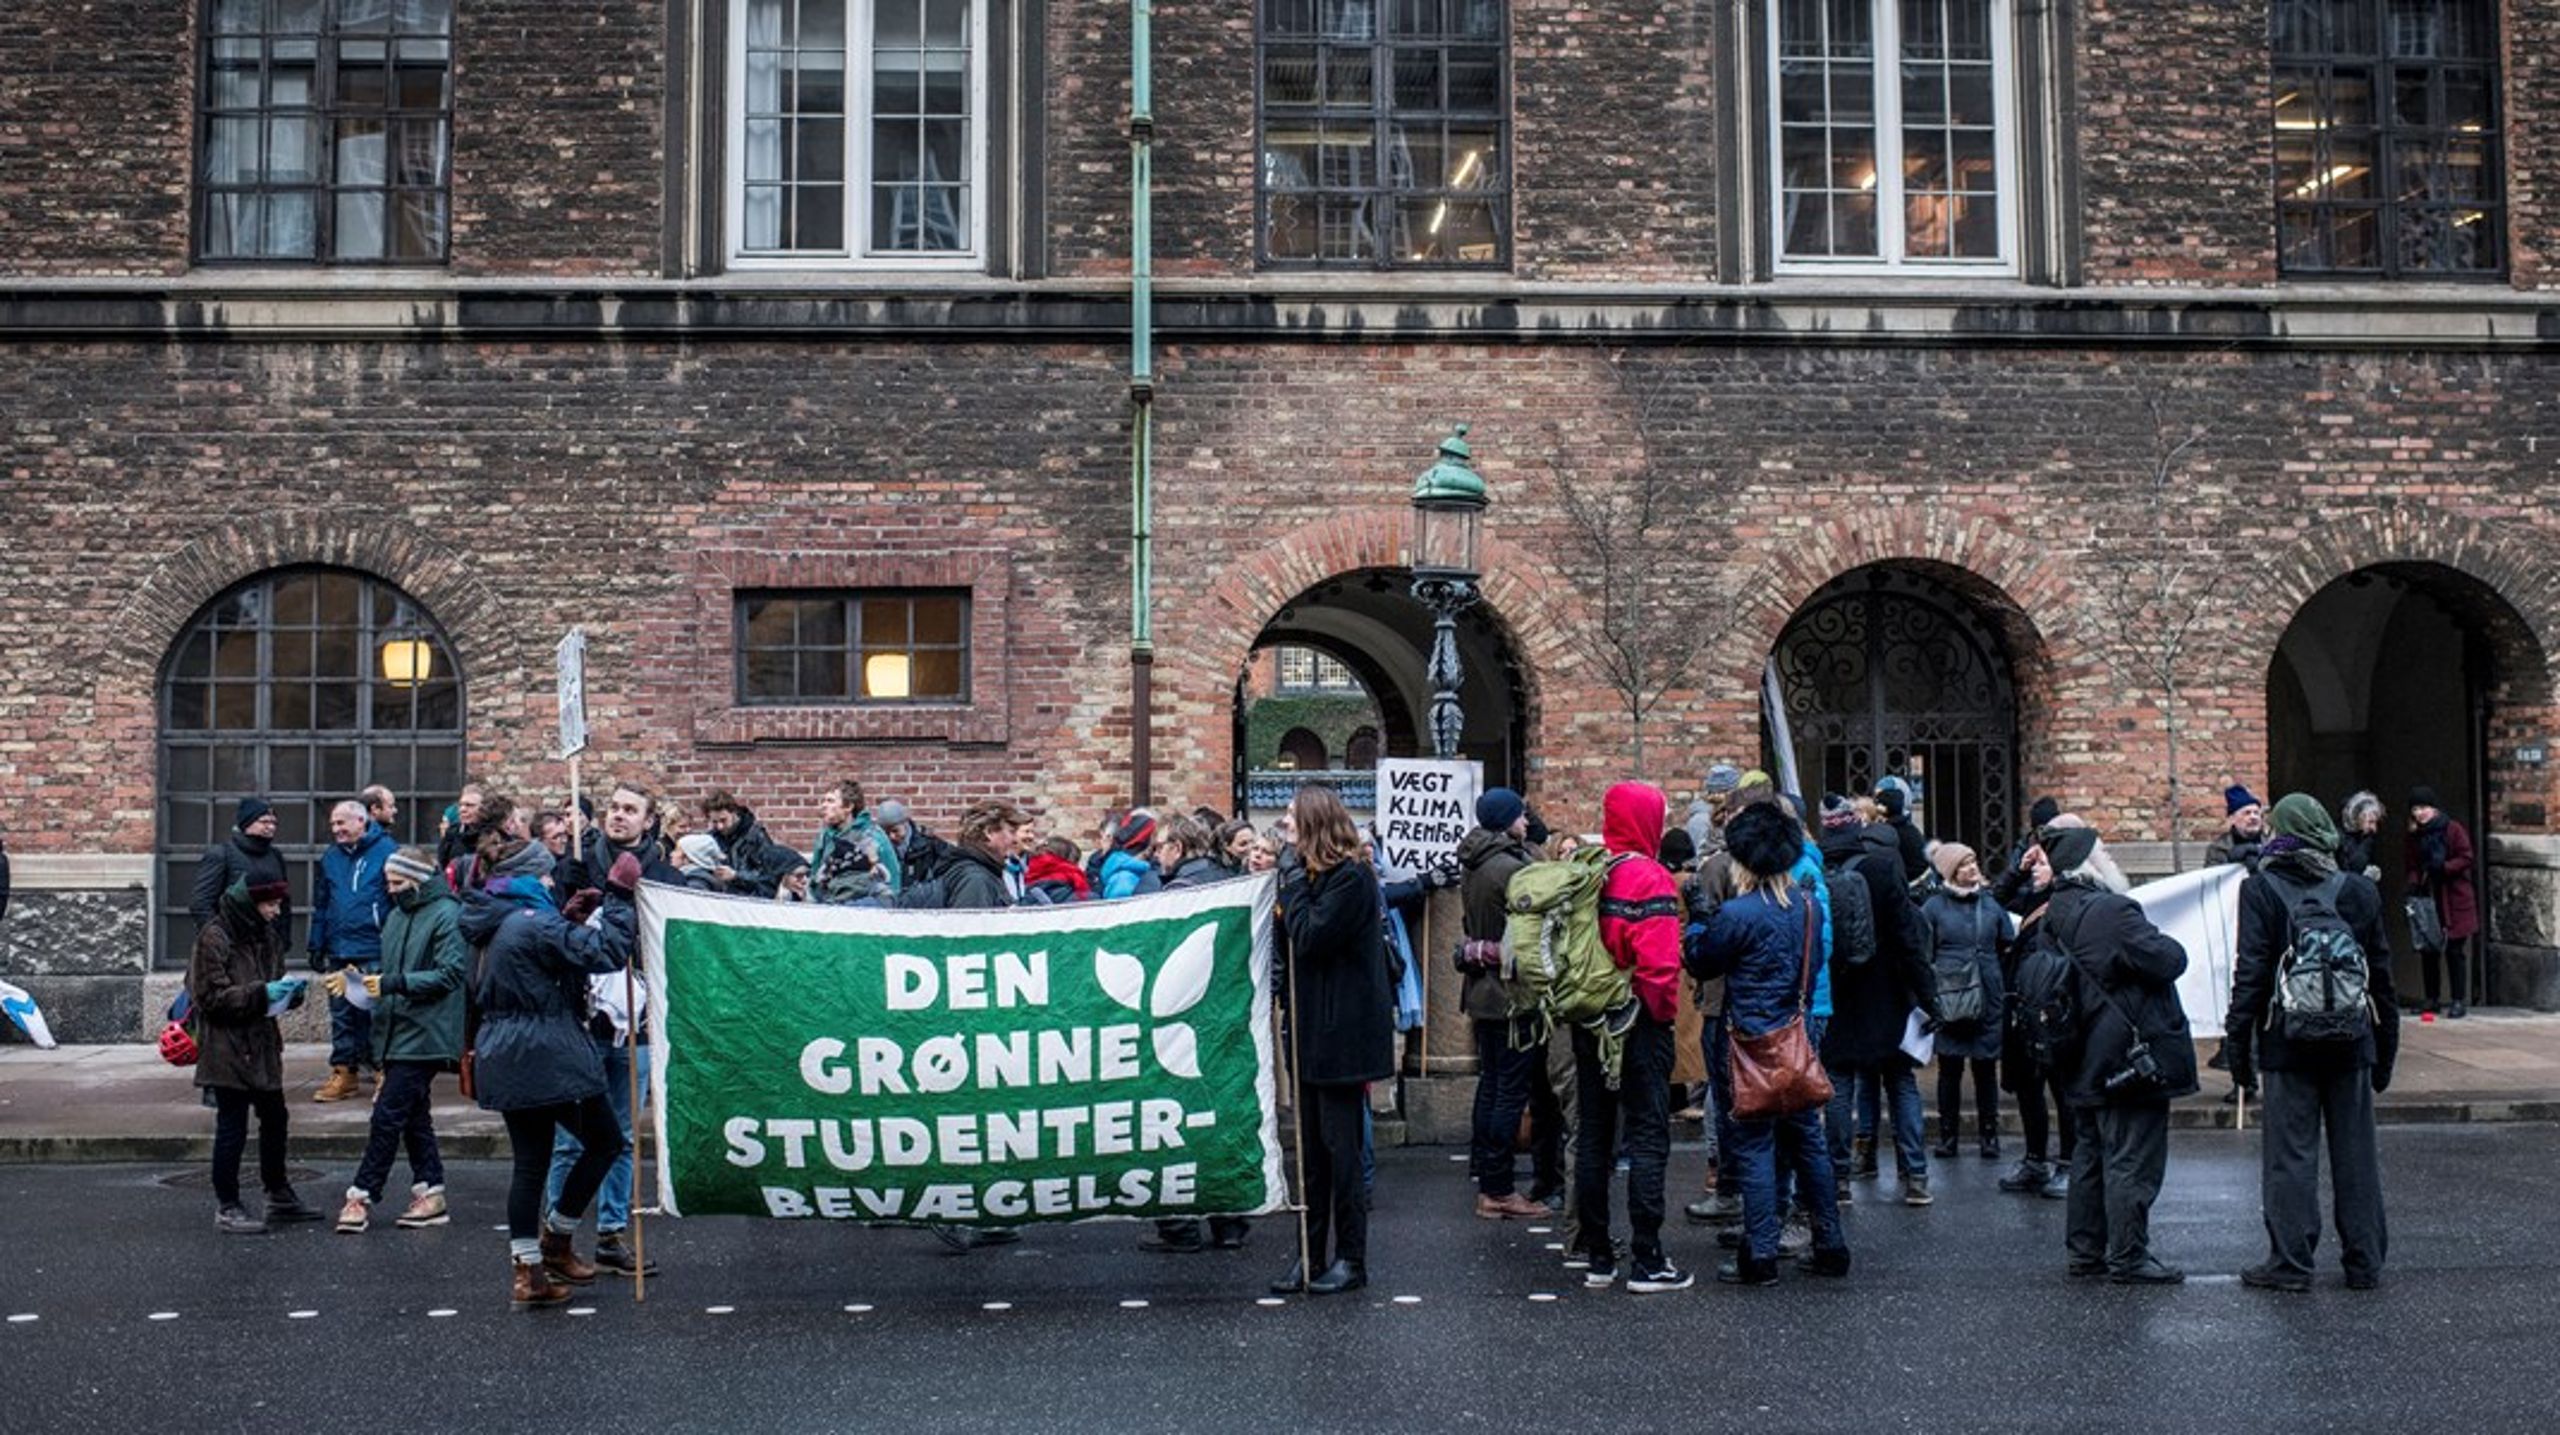 Med regeringens infrastrukturplan har regeringen forsøgt at sminke sig selv grønnere, skriver&nbsp;Caroline Bessermann og Eskil
Nordahl Fundal, der er aktive i Den Grønne Studenterbevægelse.